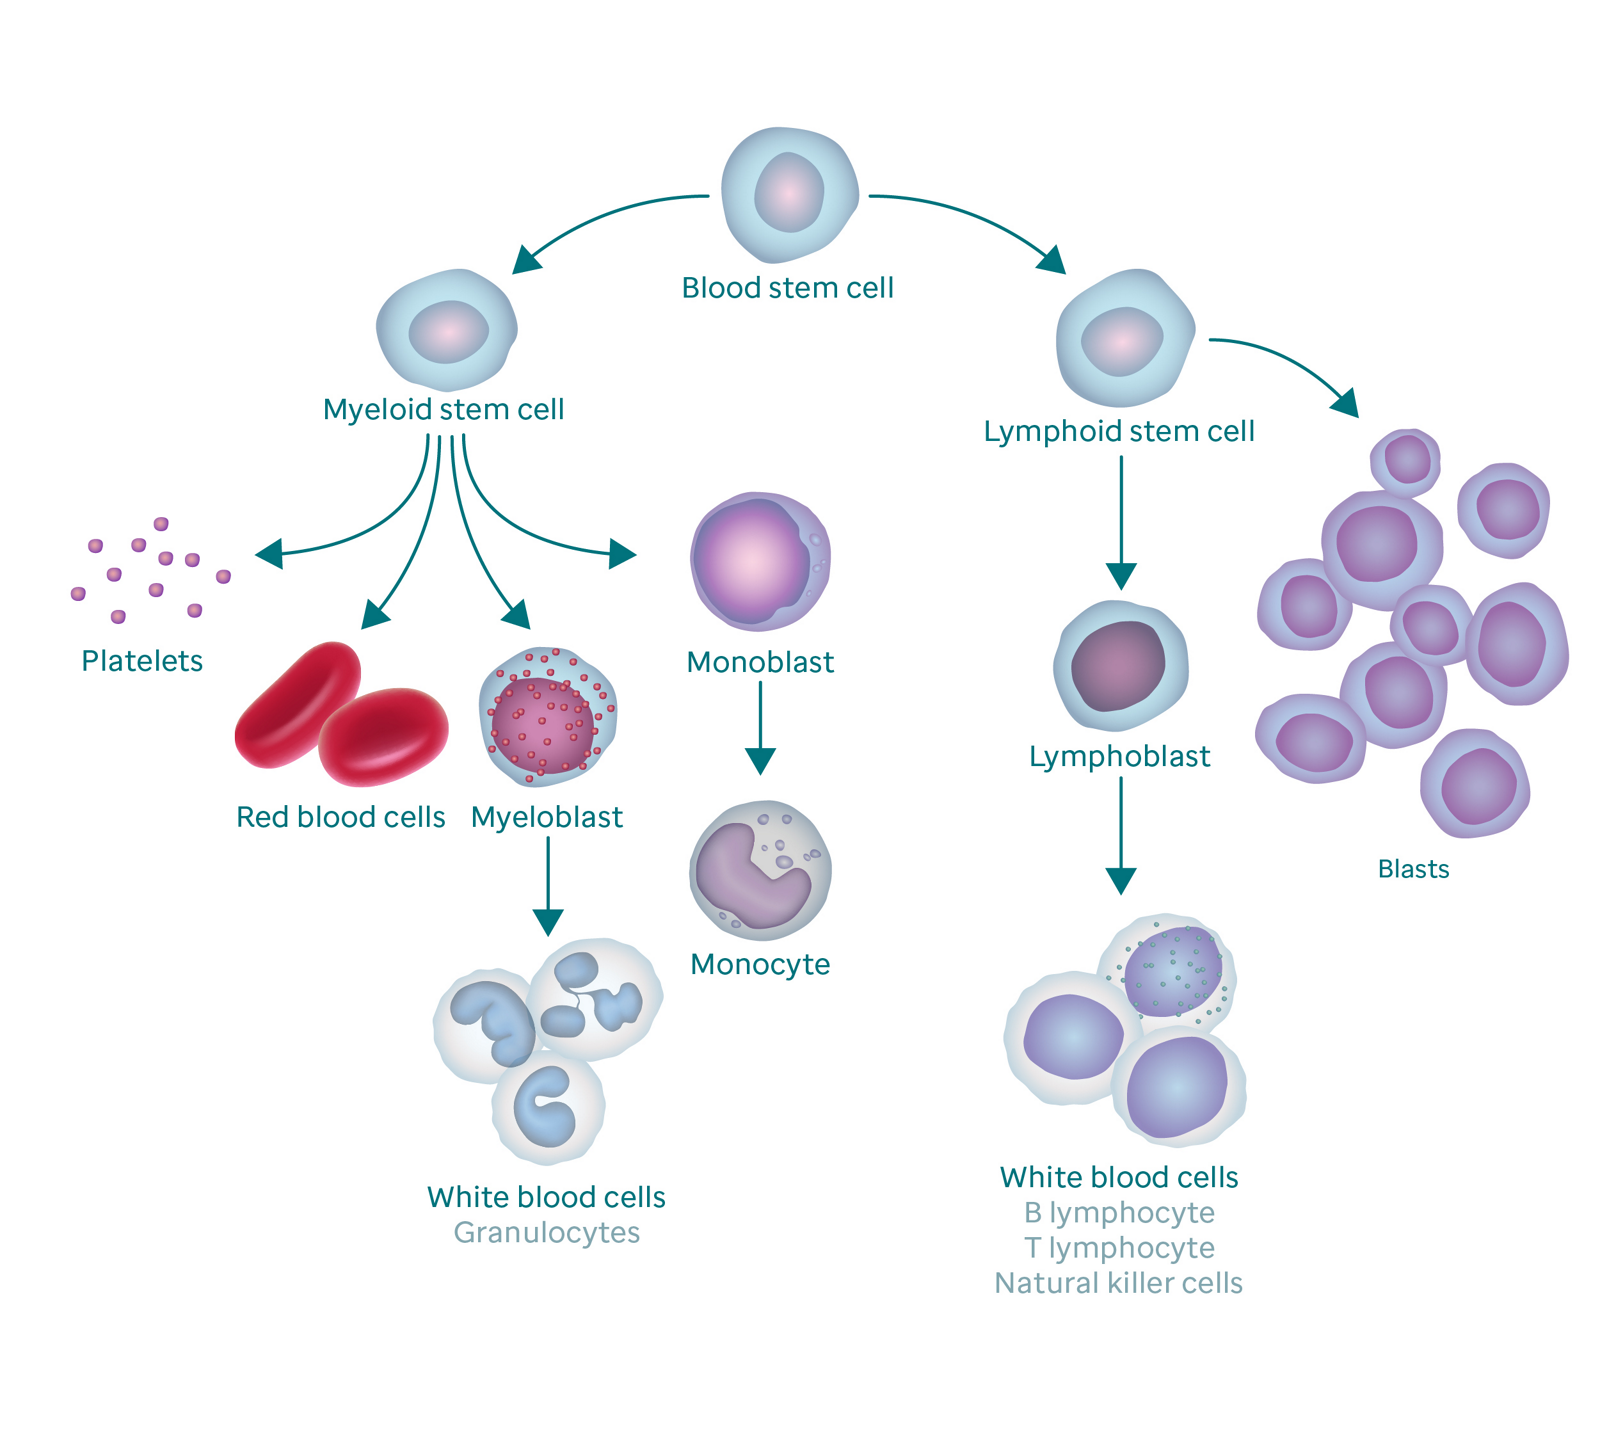 Grafische weergave van het bloedvormingsproces en hoe het resulteert in blastcellen.  De afbeelding begint met een bloedstamcel.  Aan de linkerkant vertakt het zich in myeloïde stamcellen, die zich vertakken in bloedplaatjes, rode bloedcellen, myeloblast en monoblast.  De myeloblast verandert in witte bloedcellen (ook wel granulocyten genoemd) en de monoblast verandert in een monocyt.  De rechter tak van de bloedstamcel gaat naar de lymfoïde stamcel, die zich vertakt in lymfoblasten (die veranderen in witte bloedcellen) en blastcellen.